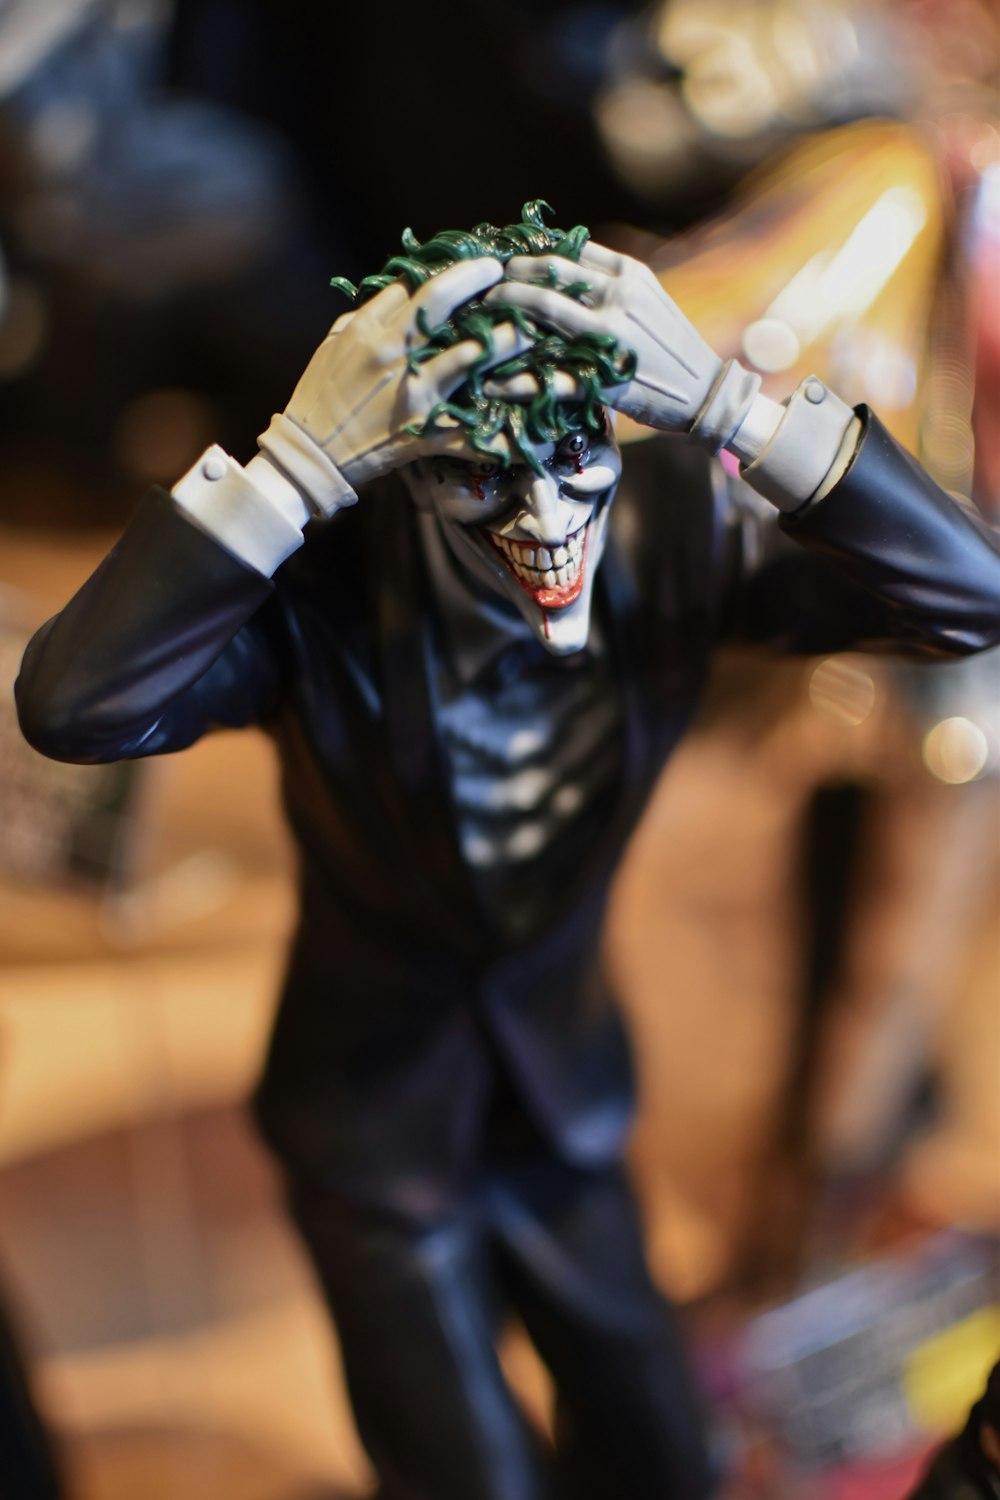 a close up of a figurine of a joker